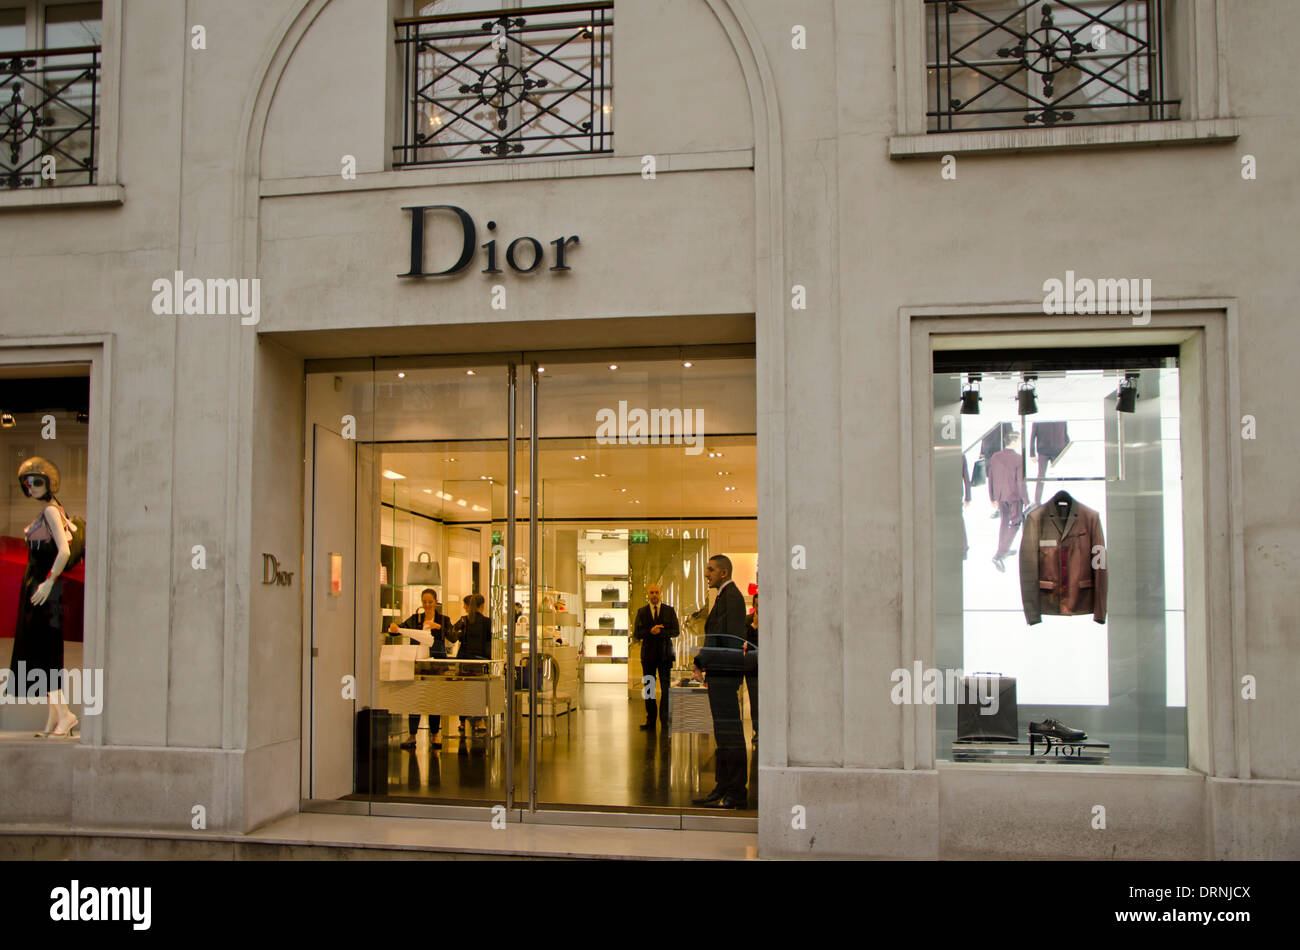 Facade of a Christian Dior fashion ...